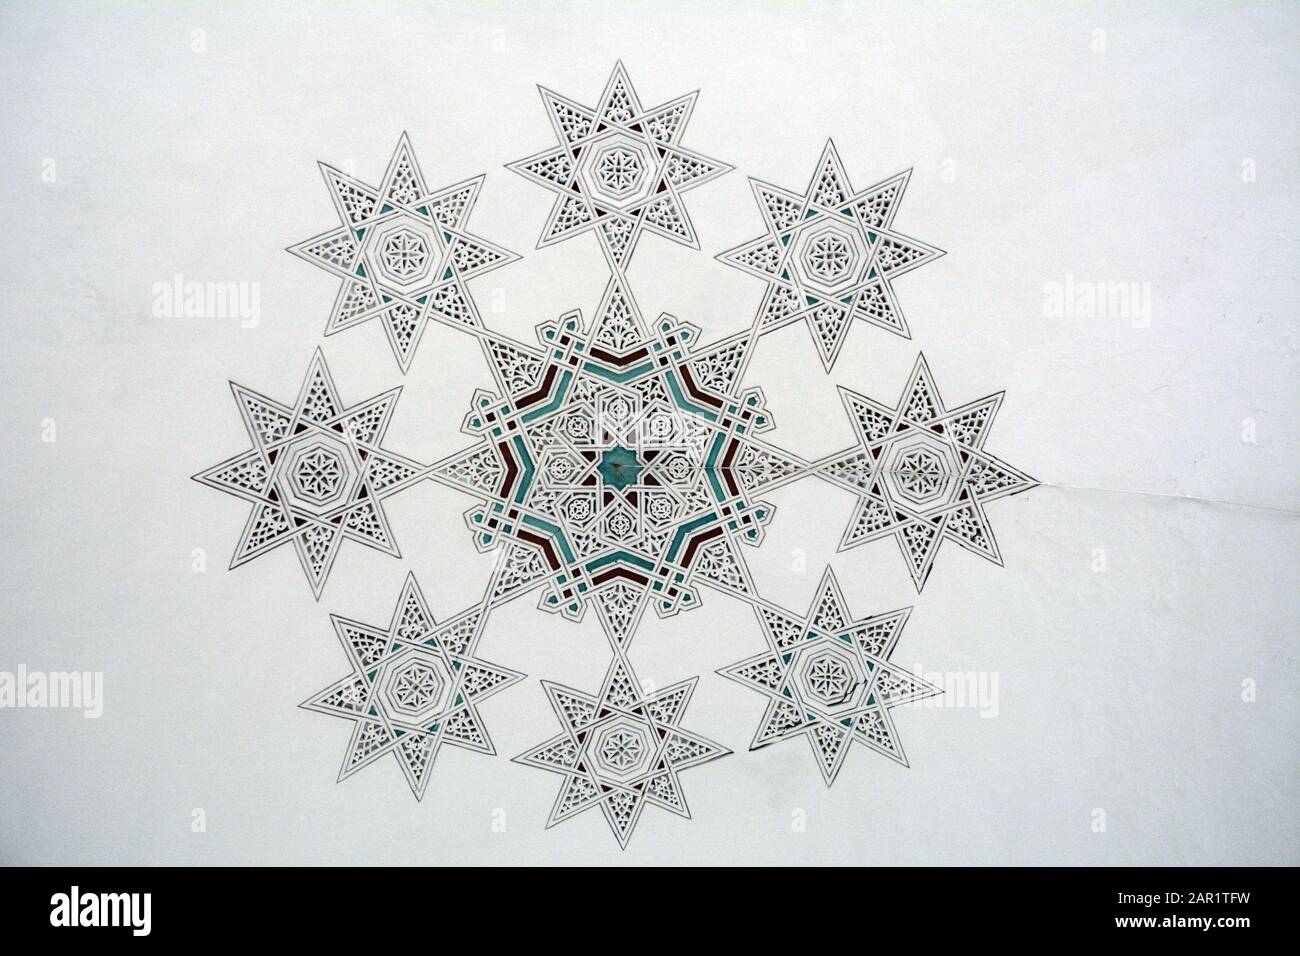 Décoration de plafond de maison géométrique islamique du XVIIIe siècle dans un stuc en plâtre sculpté connu sous le nom de Naqsh-hadida, au Musée Bardo de Tunis, en Tunisie. Banque D'Images